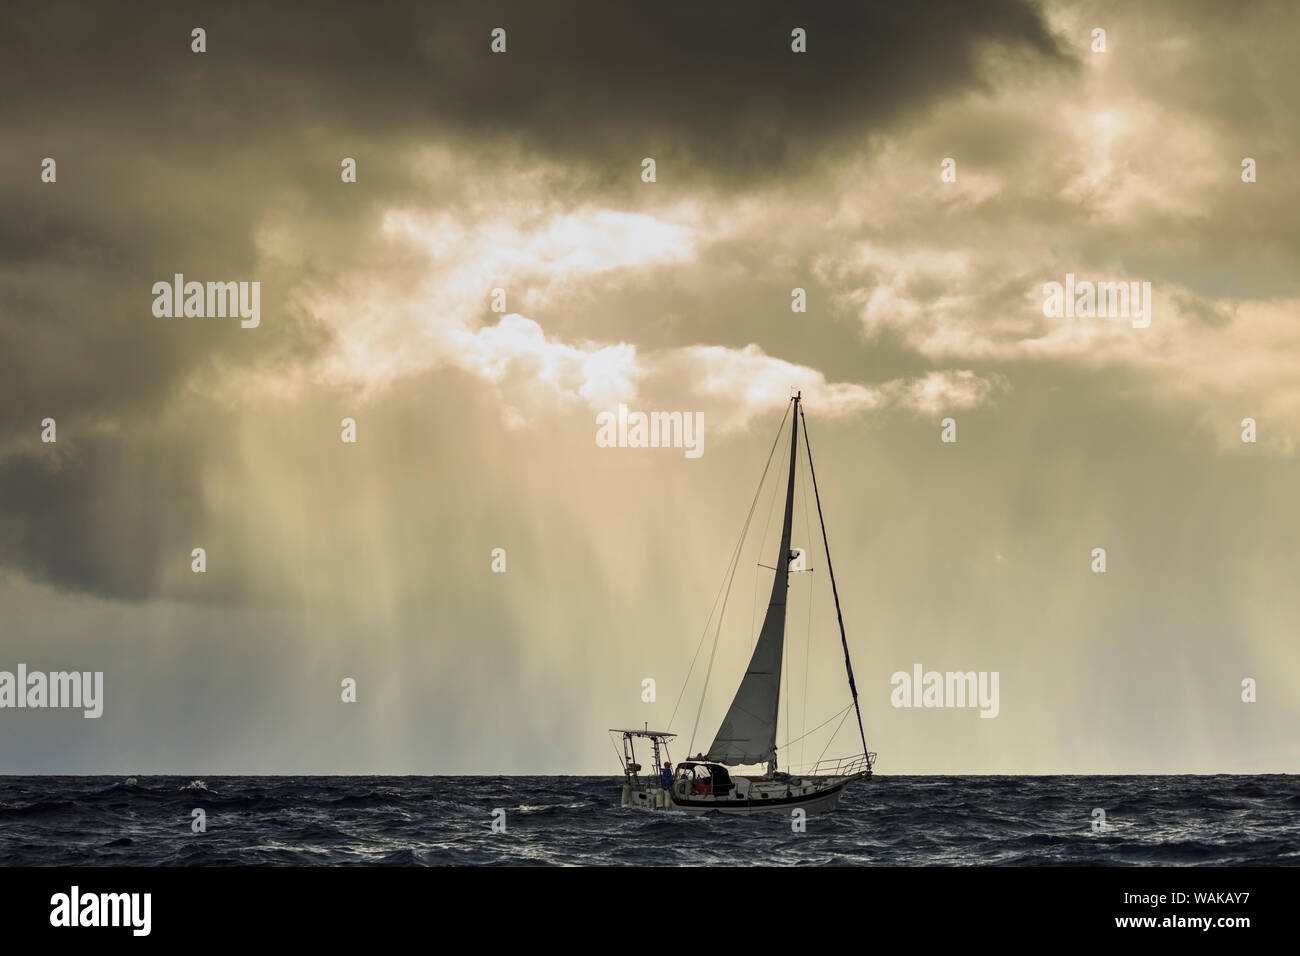 Small sailboat in stormy seas, near Lahaina, Maui, Hawaii, USA Stock Photo